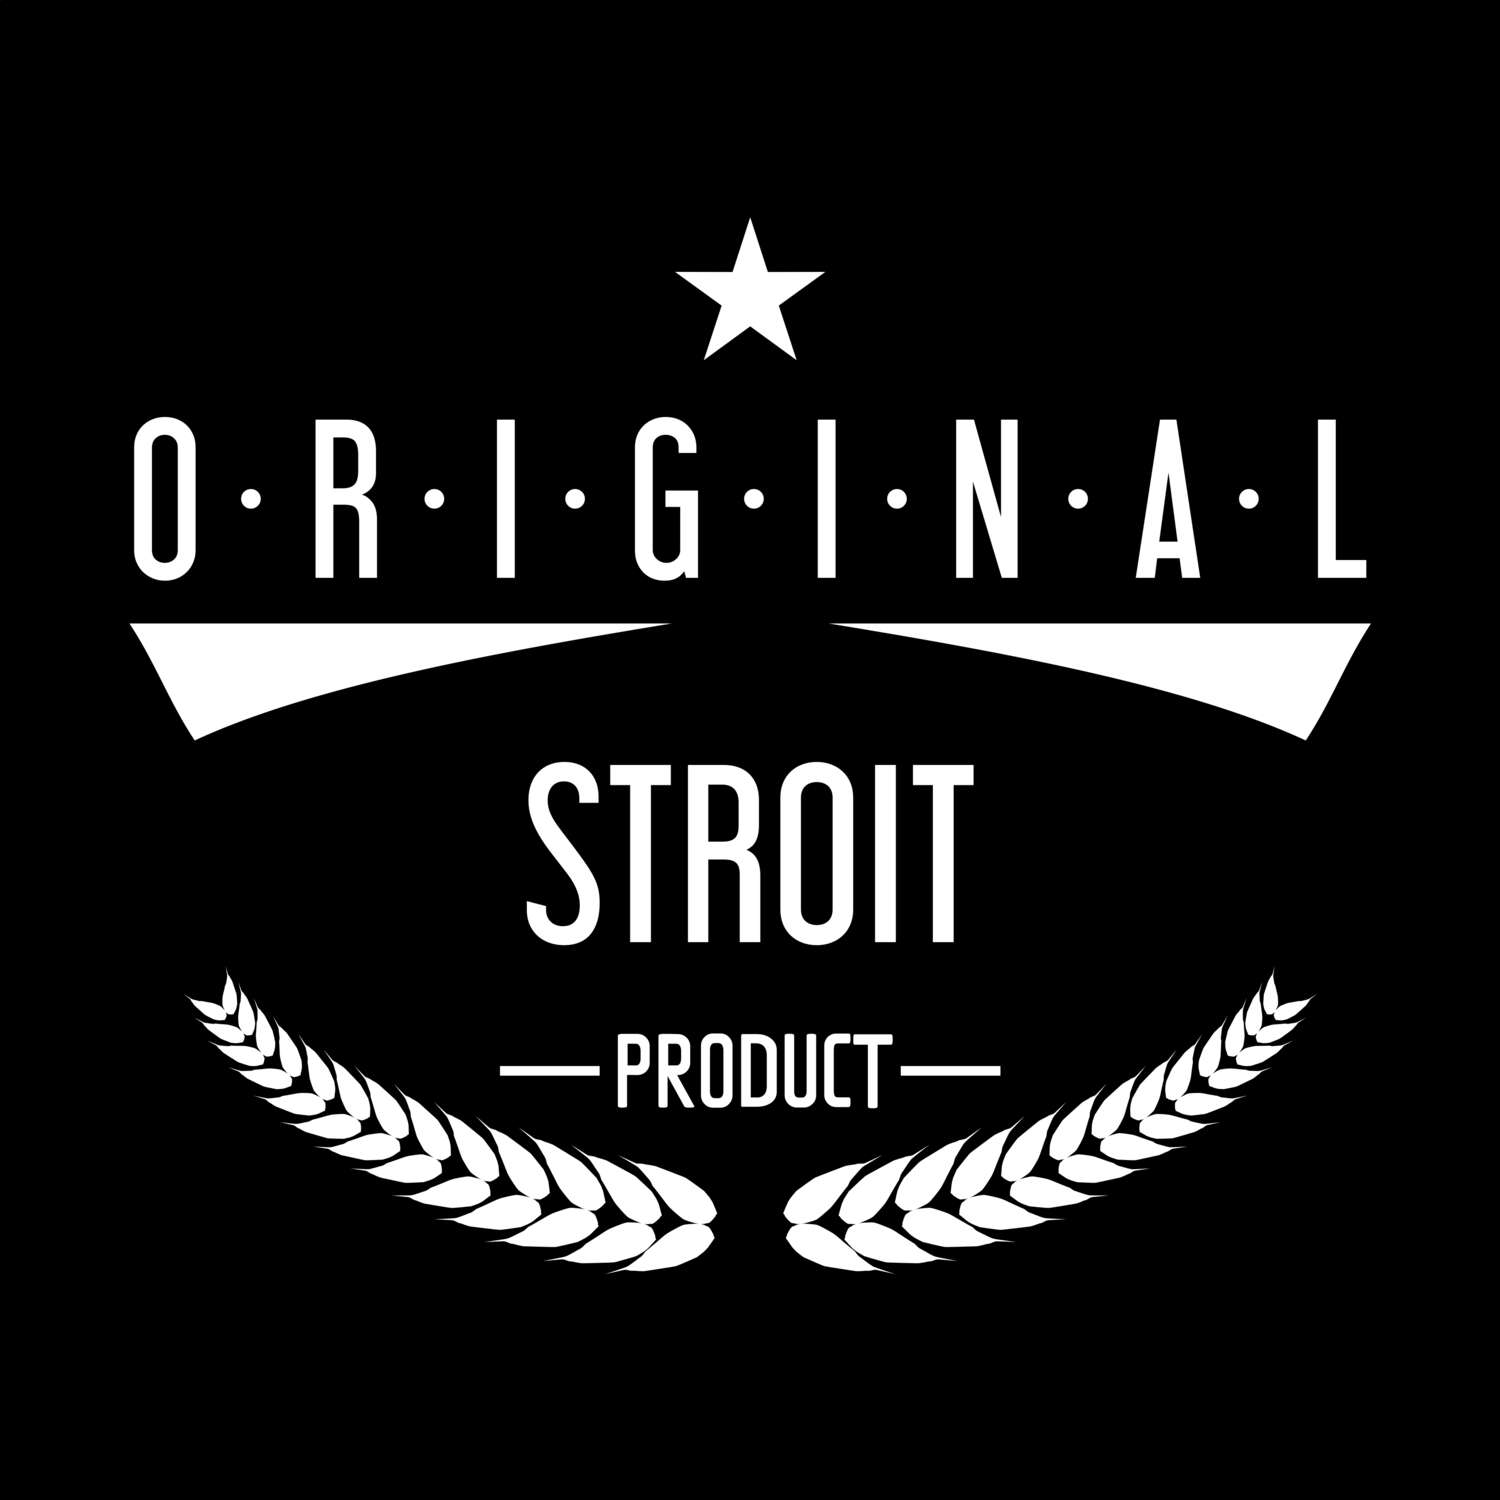 Stroit T-Shirt »Original Product«